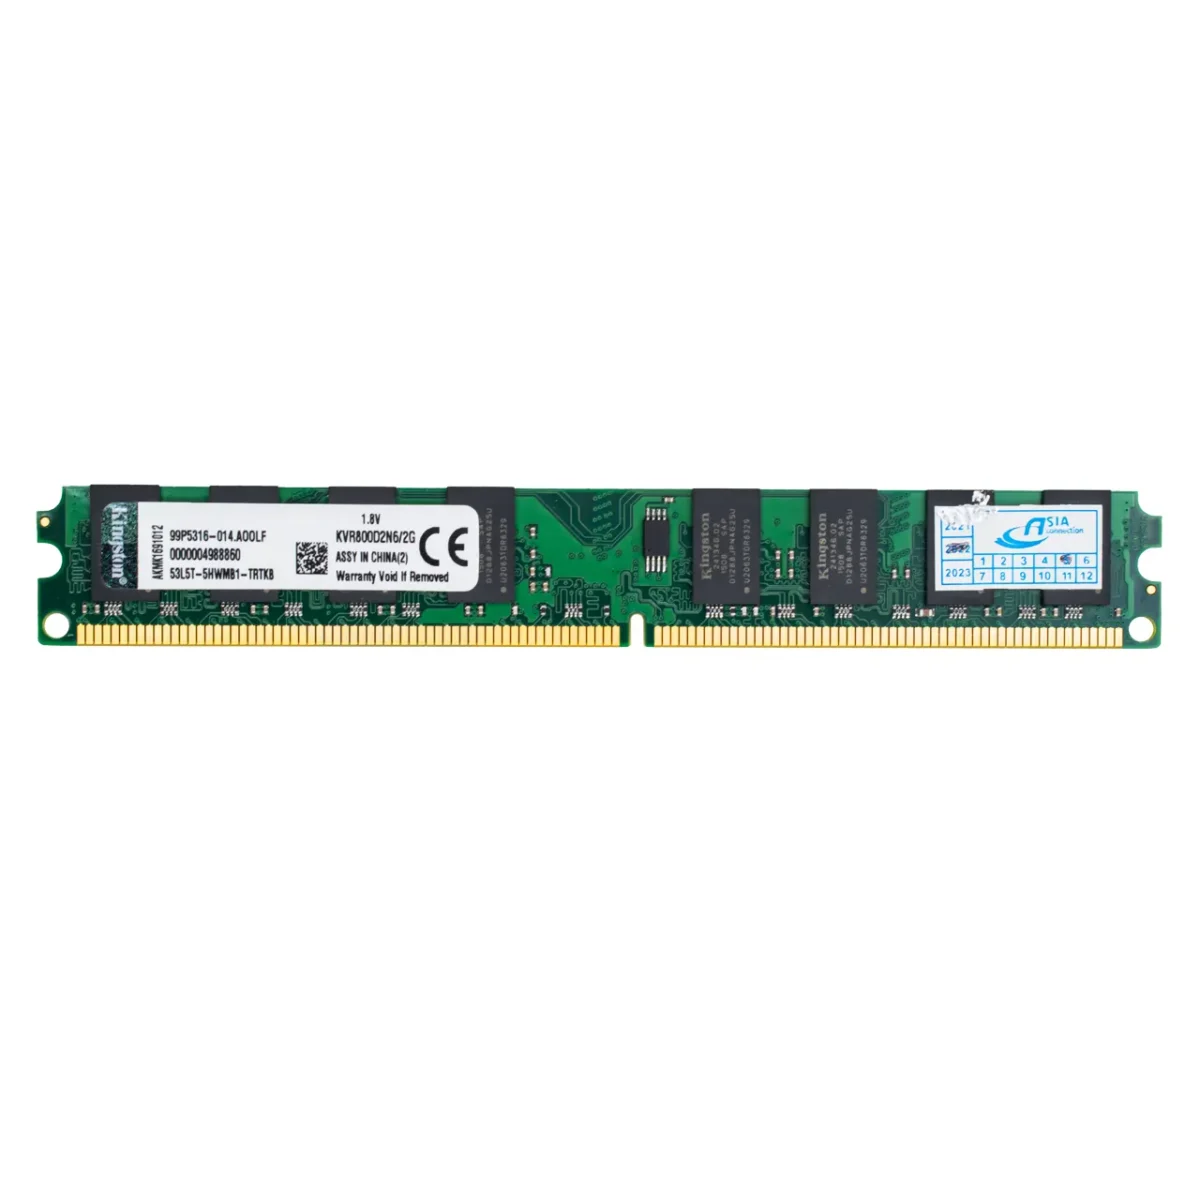 رم استوک کامپیوتر کینگستون DDR2 تک کاناله 800 مگاهرتز PC2 ظرفیت 2 گیگابایت